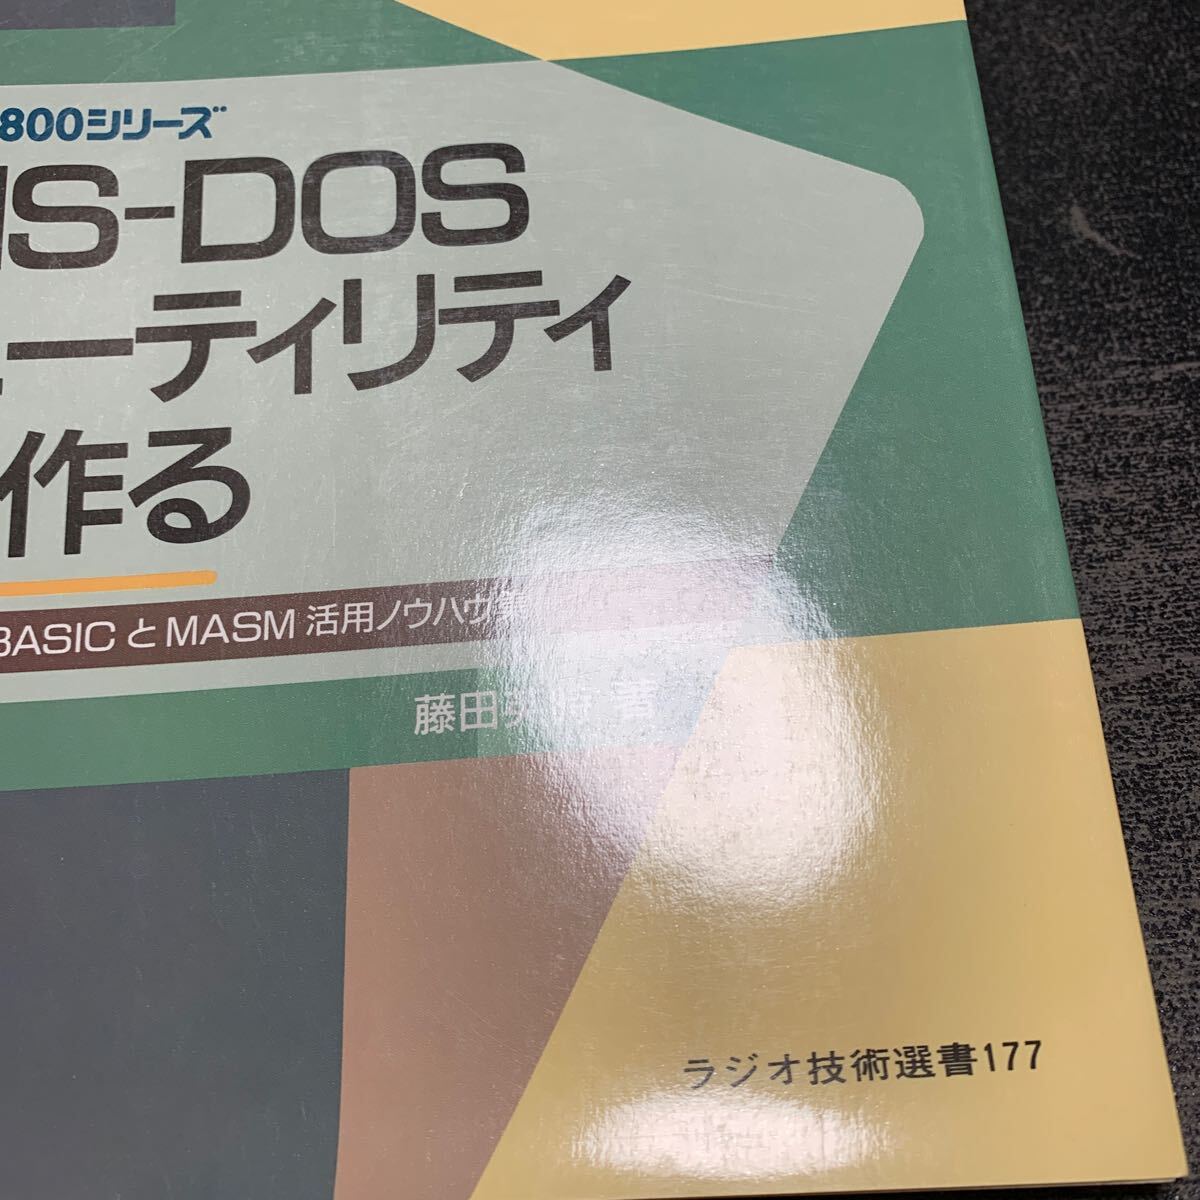 MS-DOS служебная программа . произведение .DOS-BASIC.MASM. практическое применение ноу-хау сборник радио технология подбор книг 